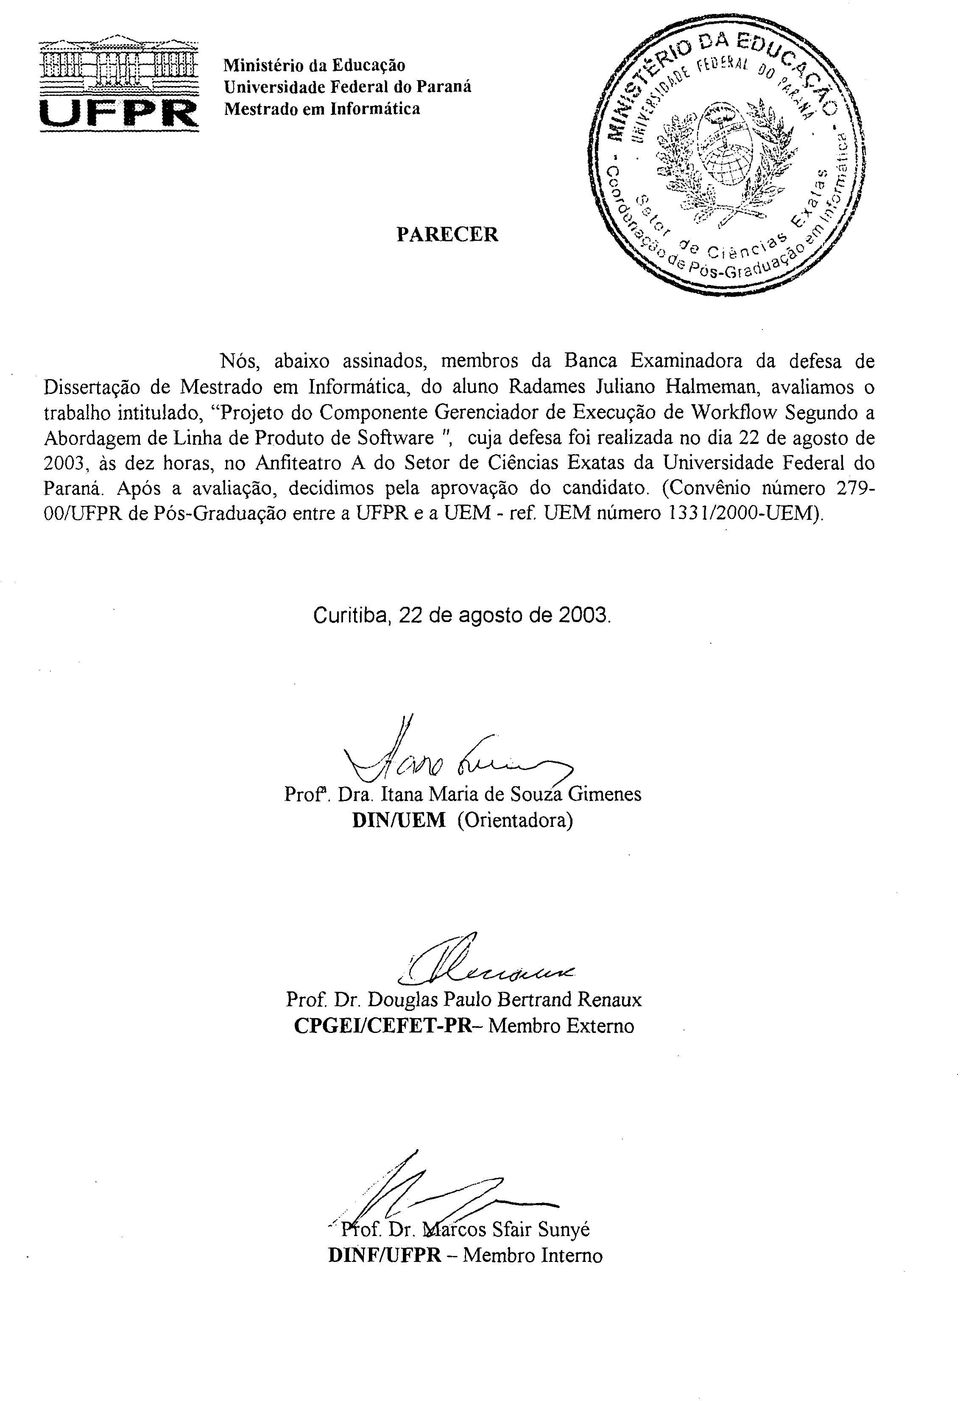 Exatas da Universidade Federal do Paraná. Após a avaliação, decidimos pela aprovação do candidato. (Convênio número 279-00/UFPR de Pós-Graduação entre a UFPR e a UEM - ref. UEM número 1331/2000-UEM).